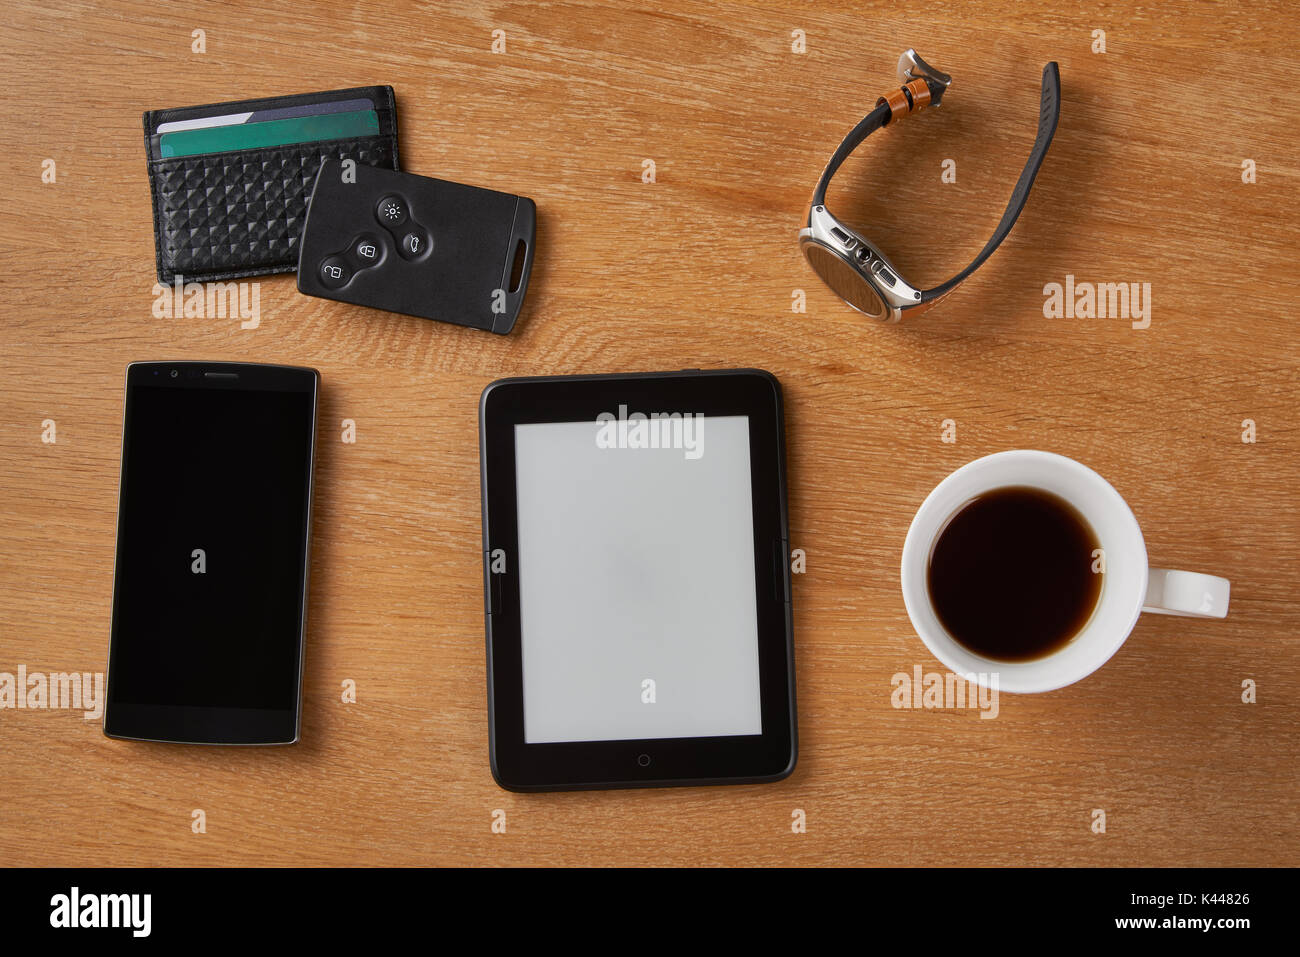 E-book Gerät mit Smart Key, Card wallet, Smart, Smart Phone und eine Tasse Kaffee auf einen hölzernen Tisch. Stockfoto